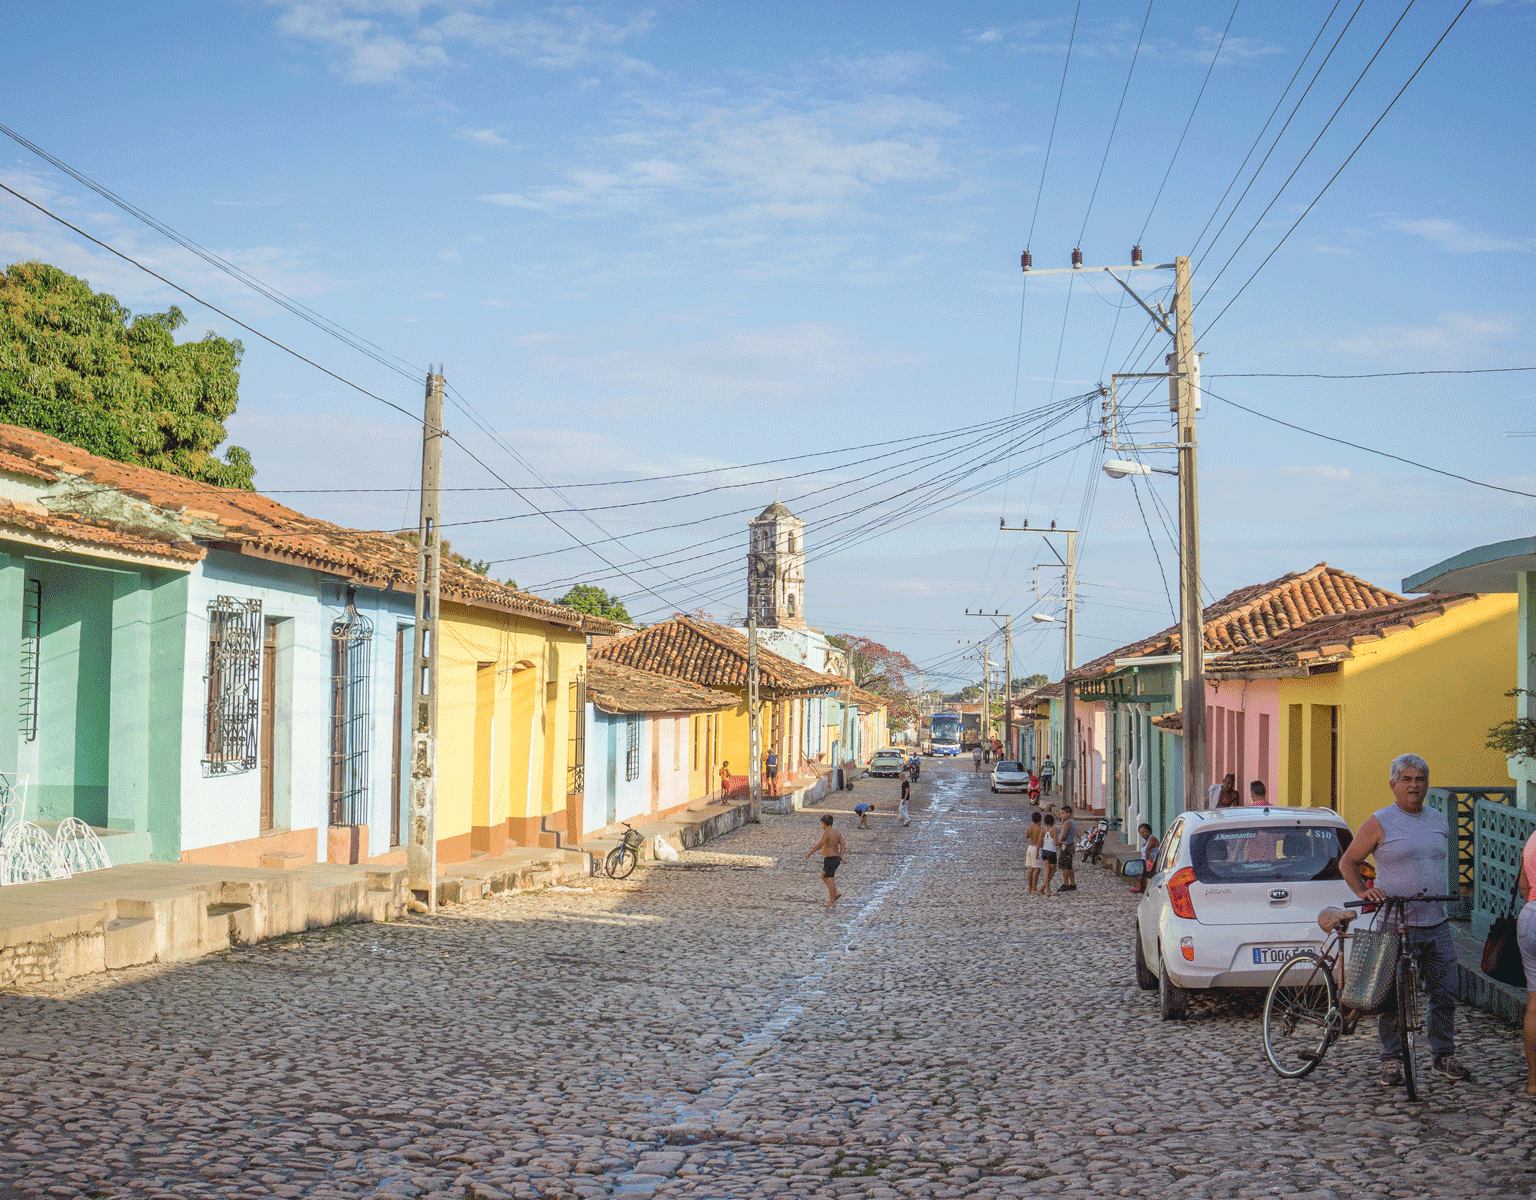 Bunte Häuser säumen die gepflasterte Straße auf der Kinder spielen in Kuba, Trinidad.